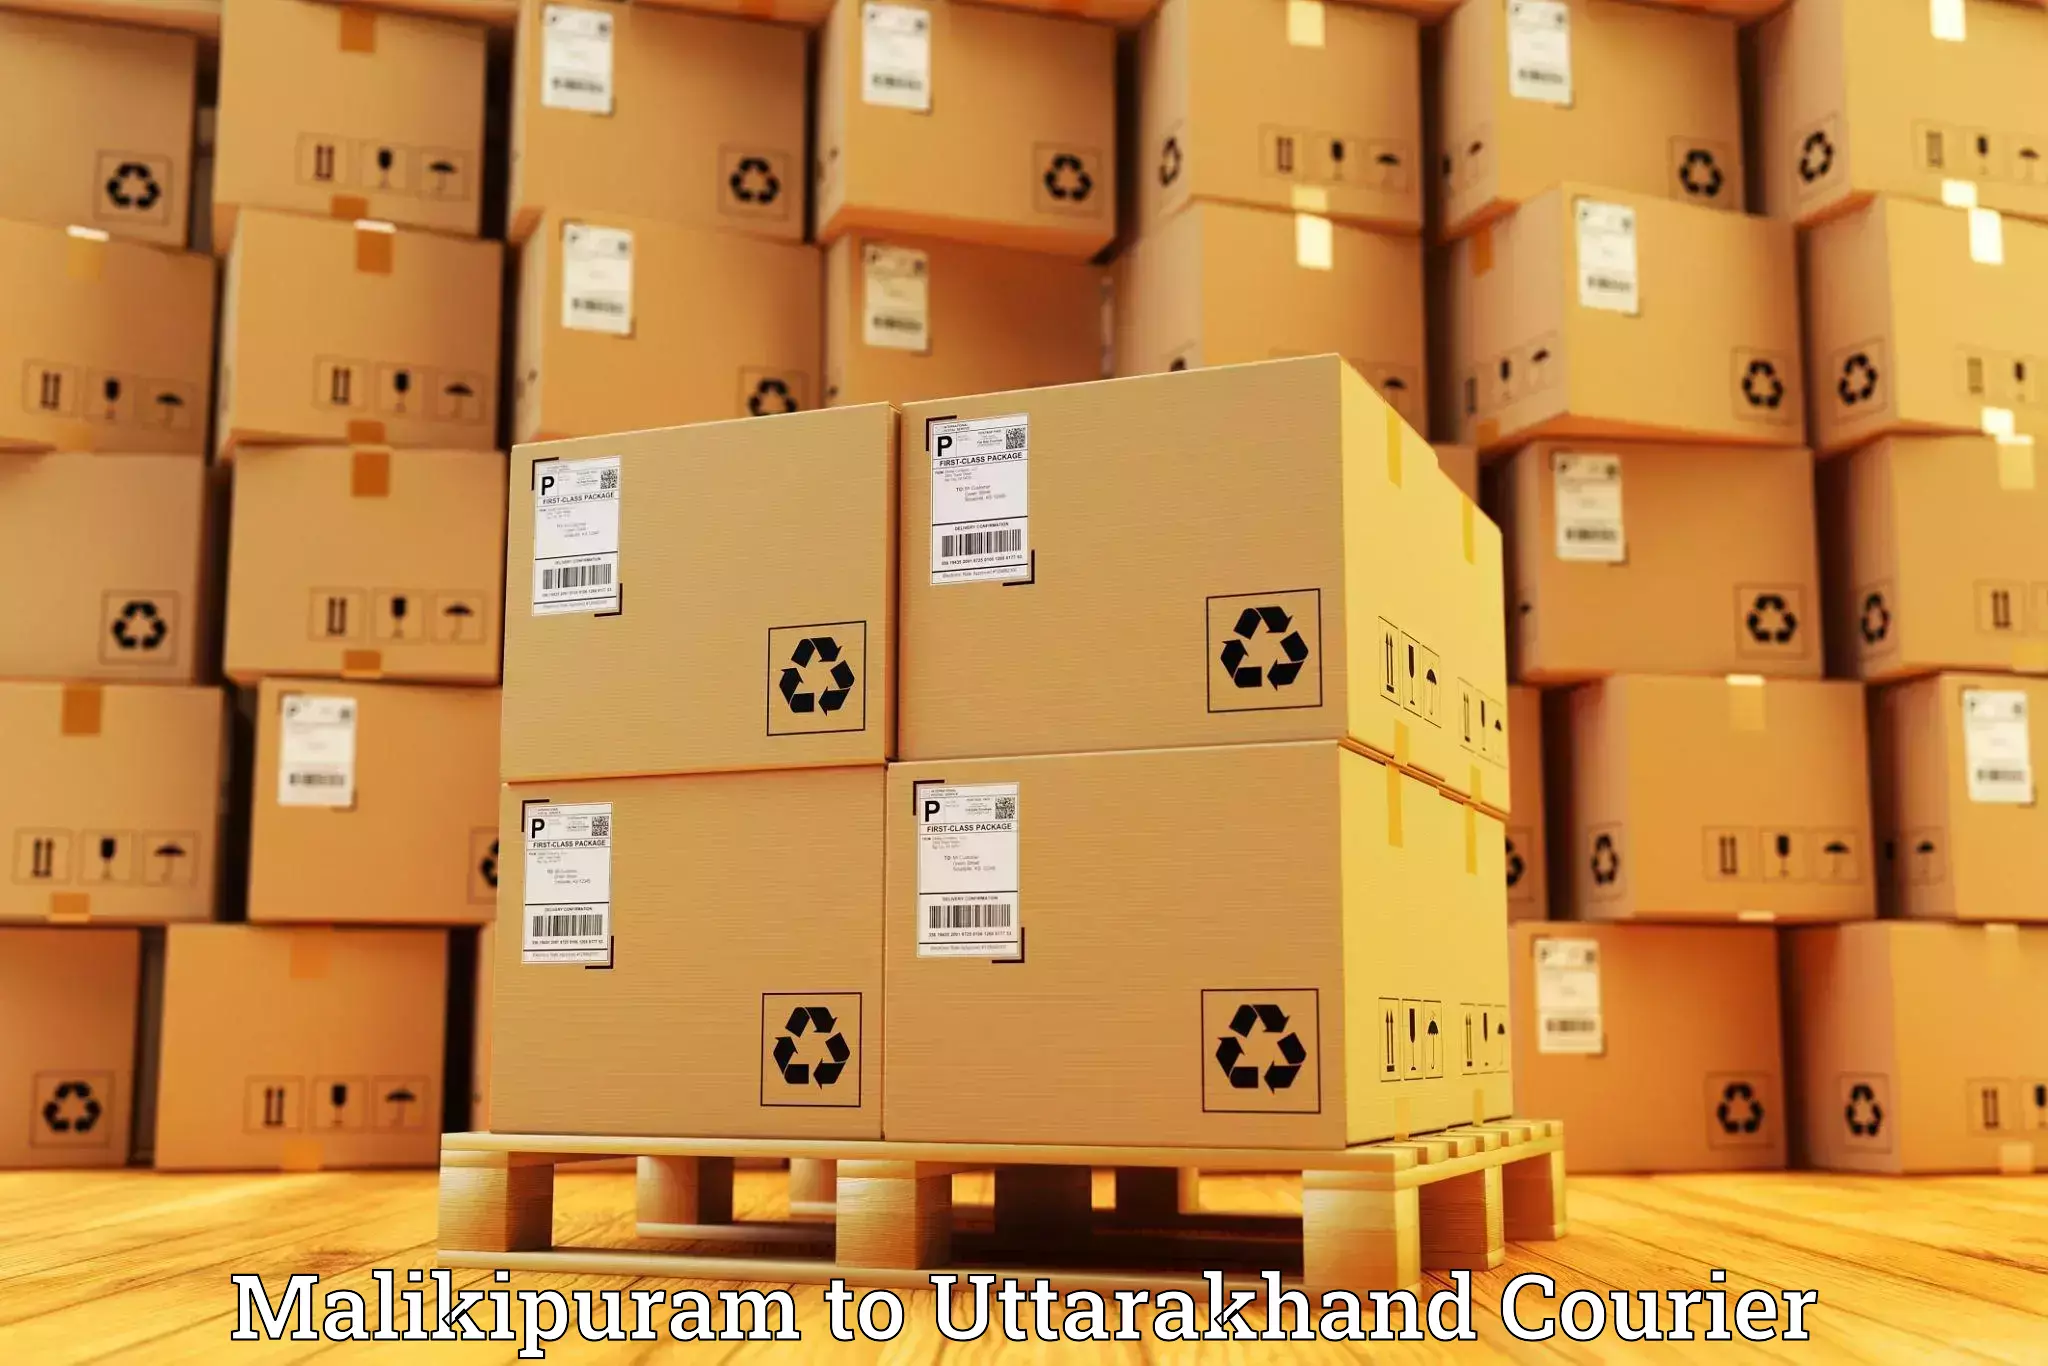 Nationwide parcel services Malikipuram to Uttarakhand